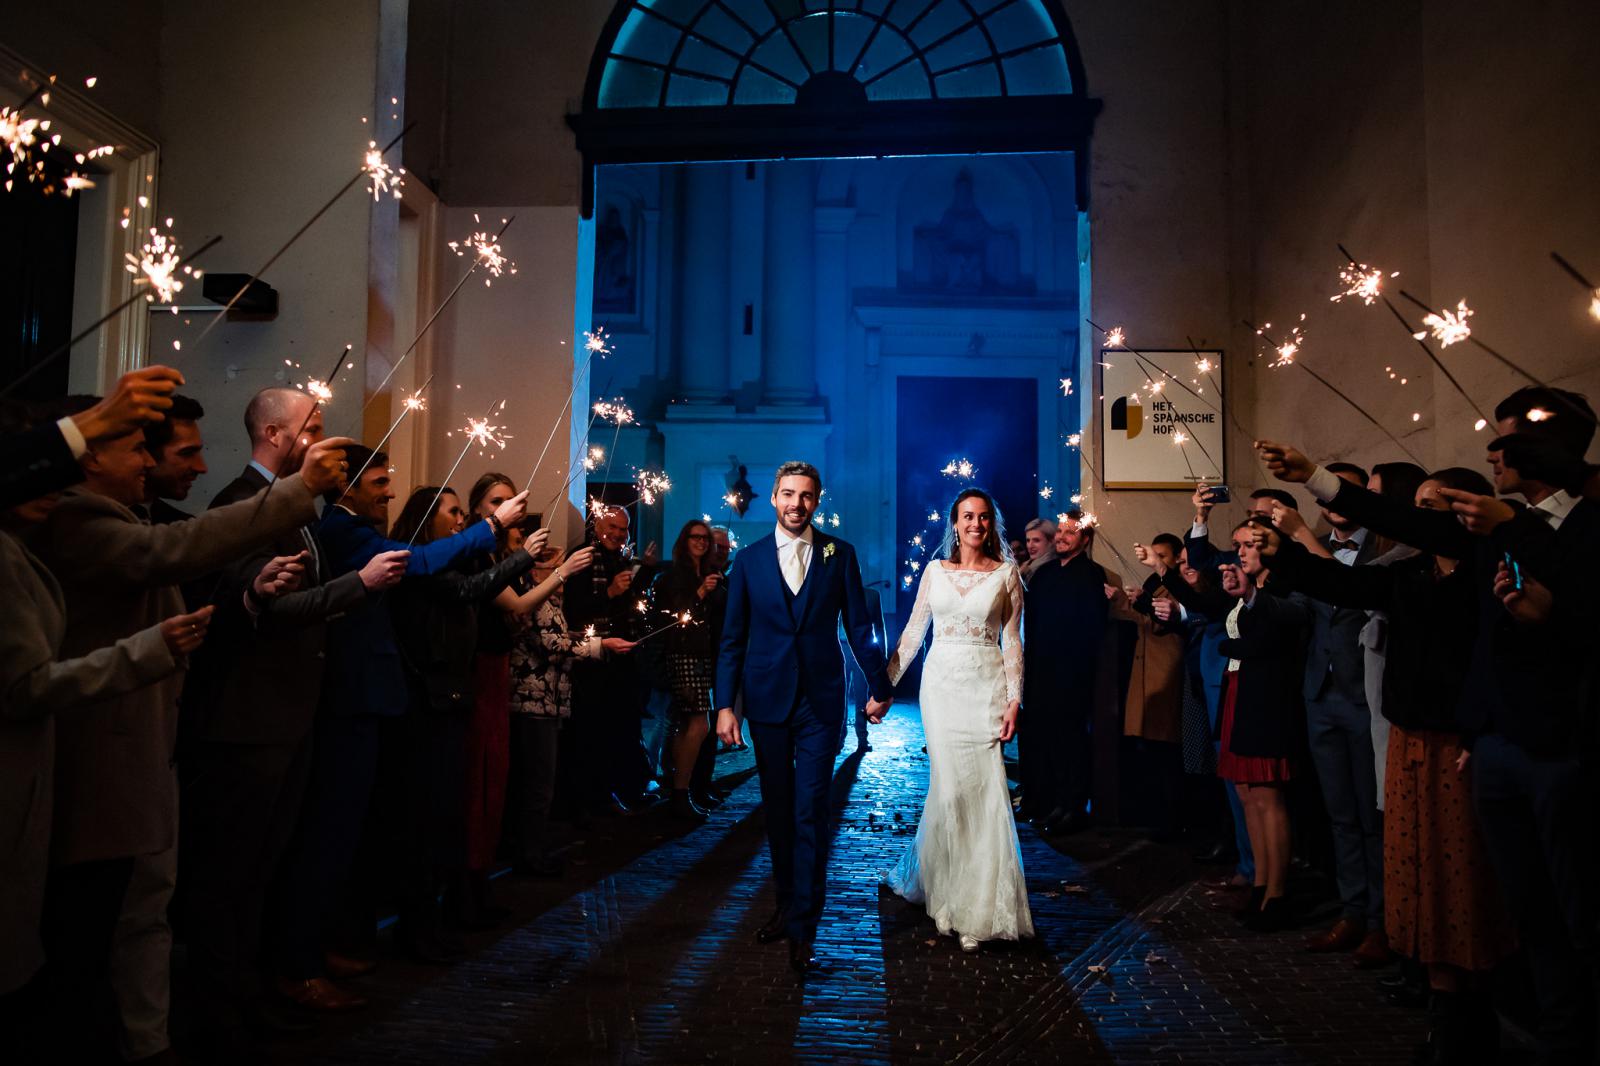 Sterrentjes exit bij het spaansche hof door trouwfotograaf den haag